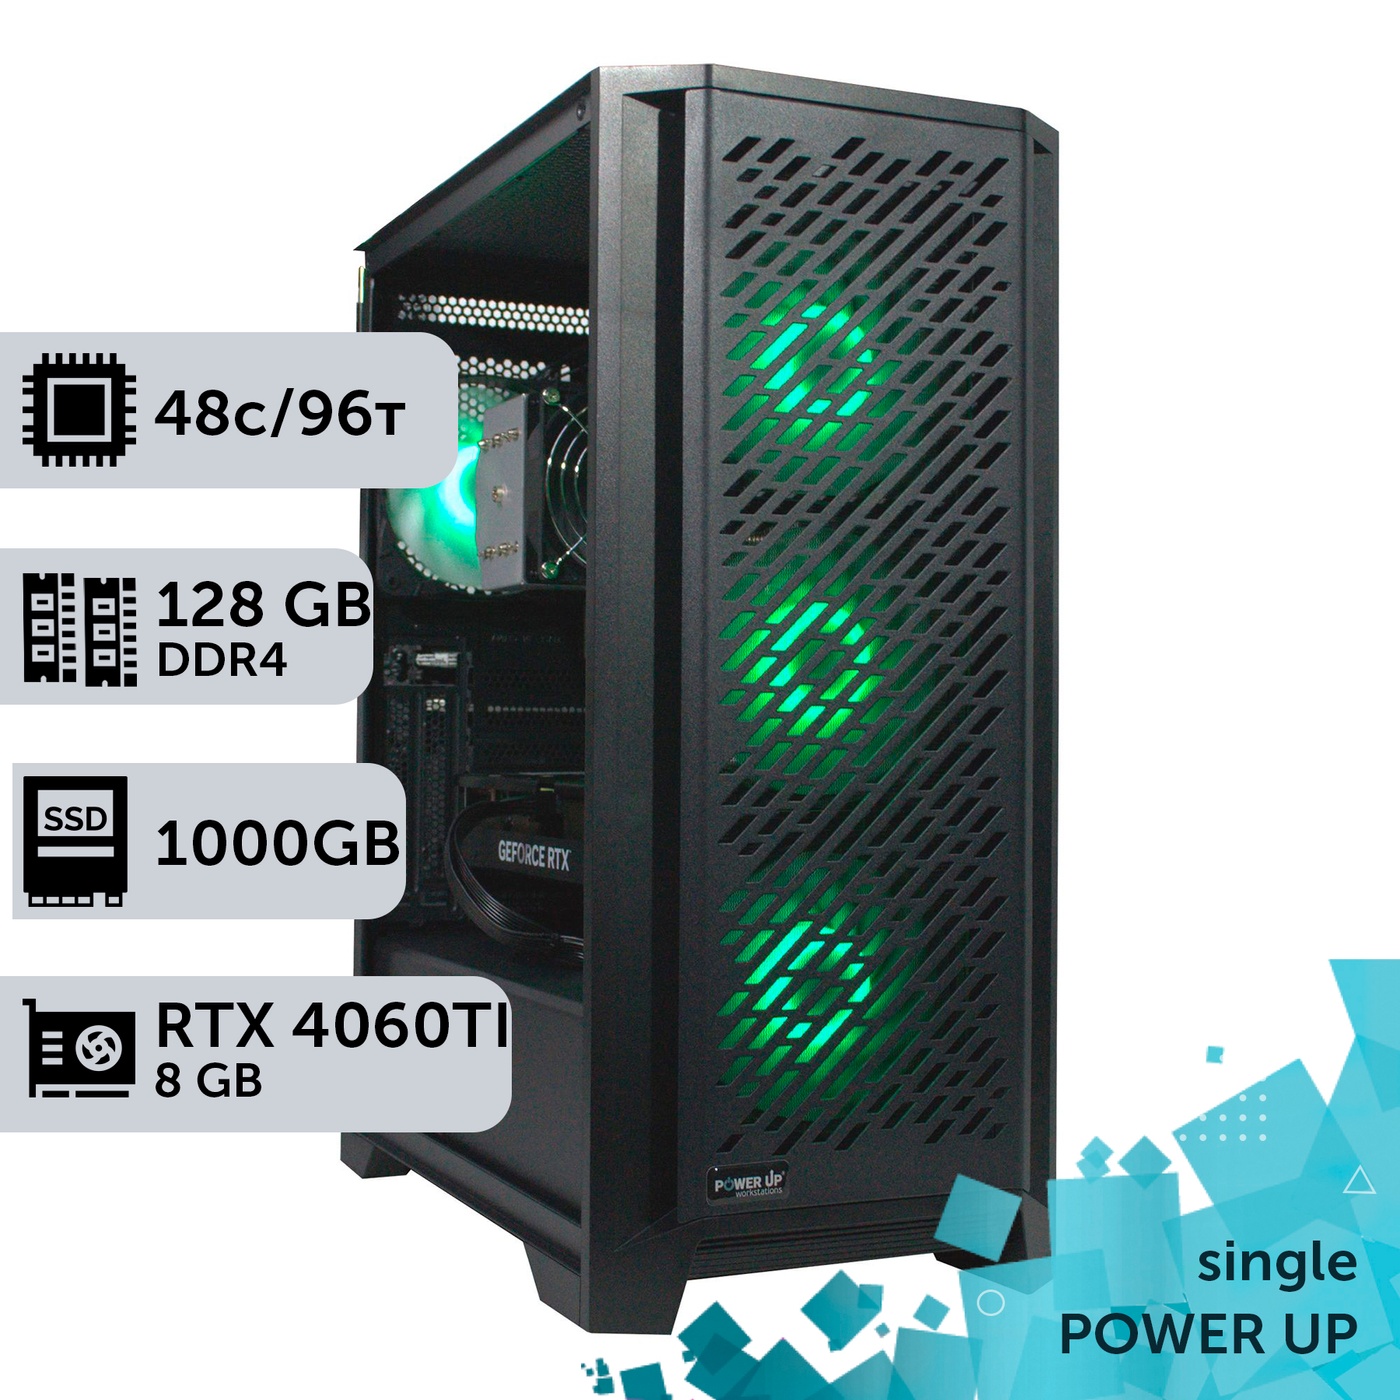 Робоча станція PowerUp #252 AMD EPYC 7642/128 GB/SSD 1TB/GeForce RTX 4060Ti 8GB